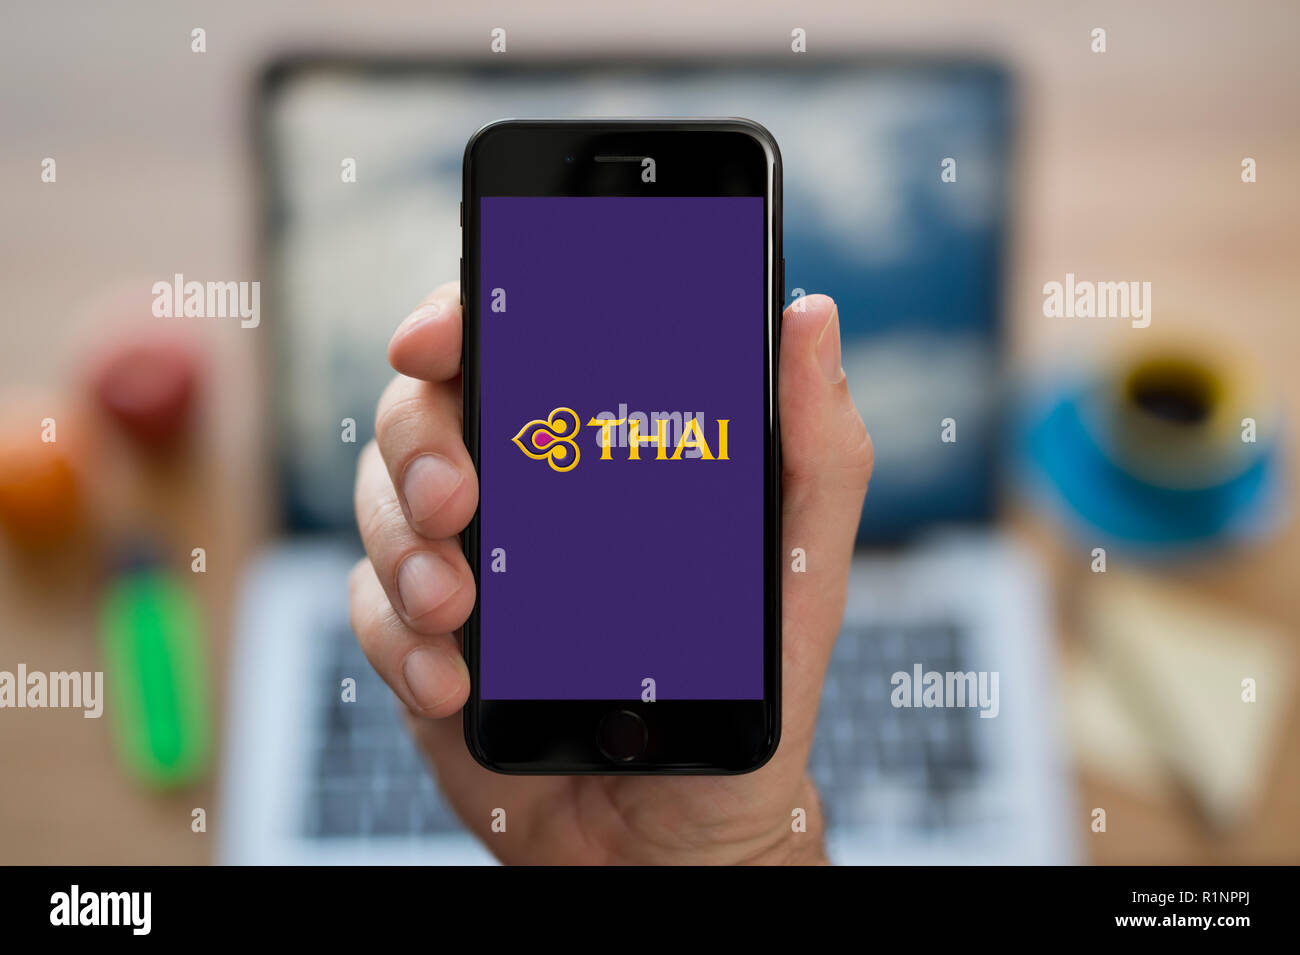 Un homme se penche sur son iPhone qui affiche le logo de Thai Airways, en restant assis devant son ordinateur 24 (usage éditorial uniquement). Banque D'Images